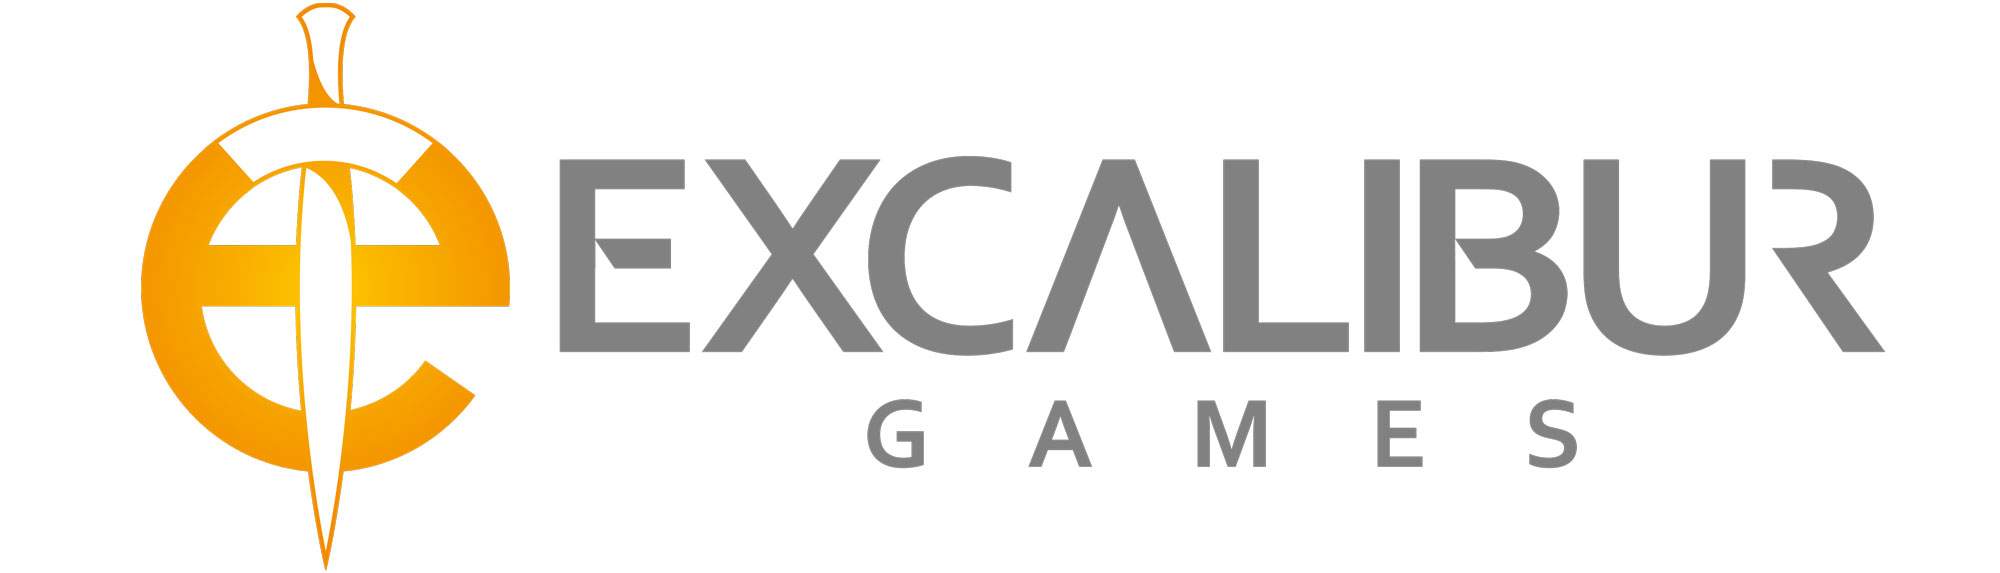 Excalibur Games